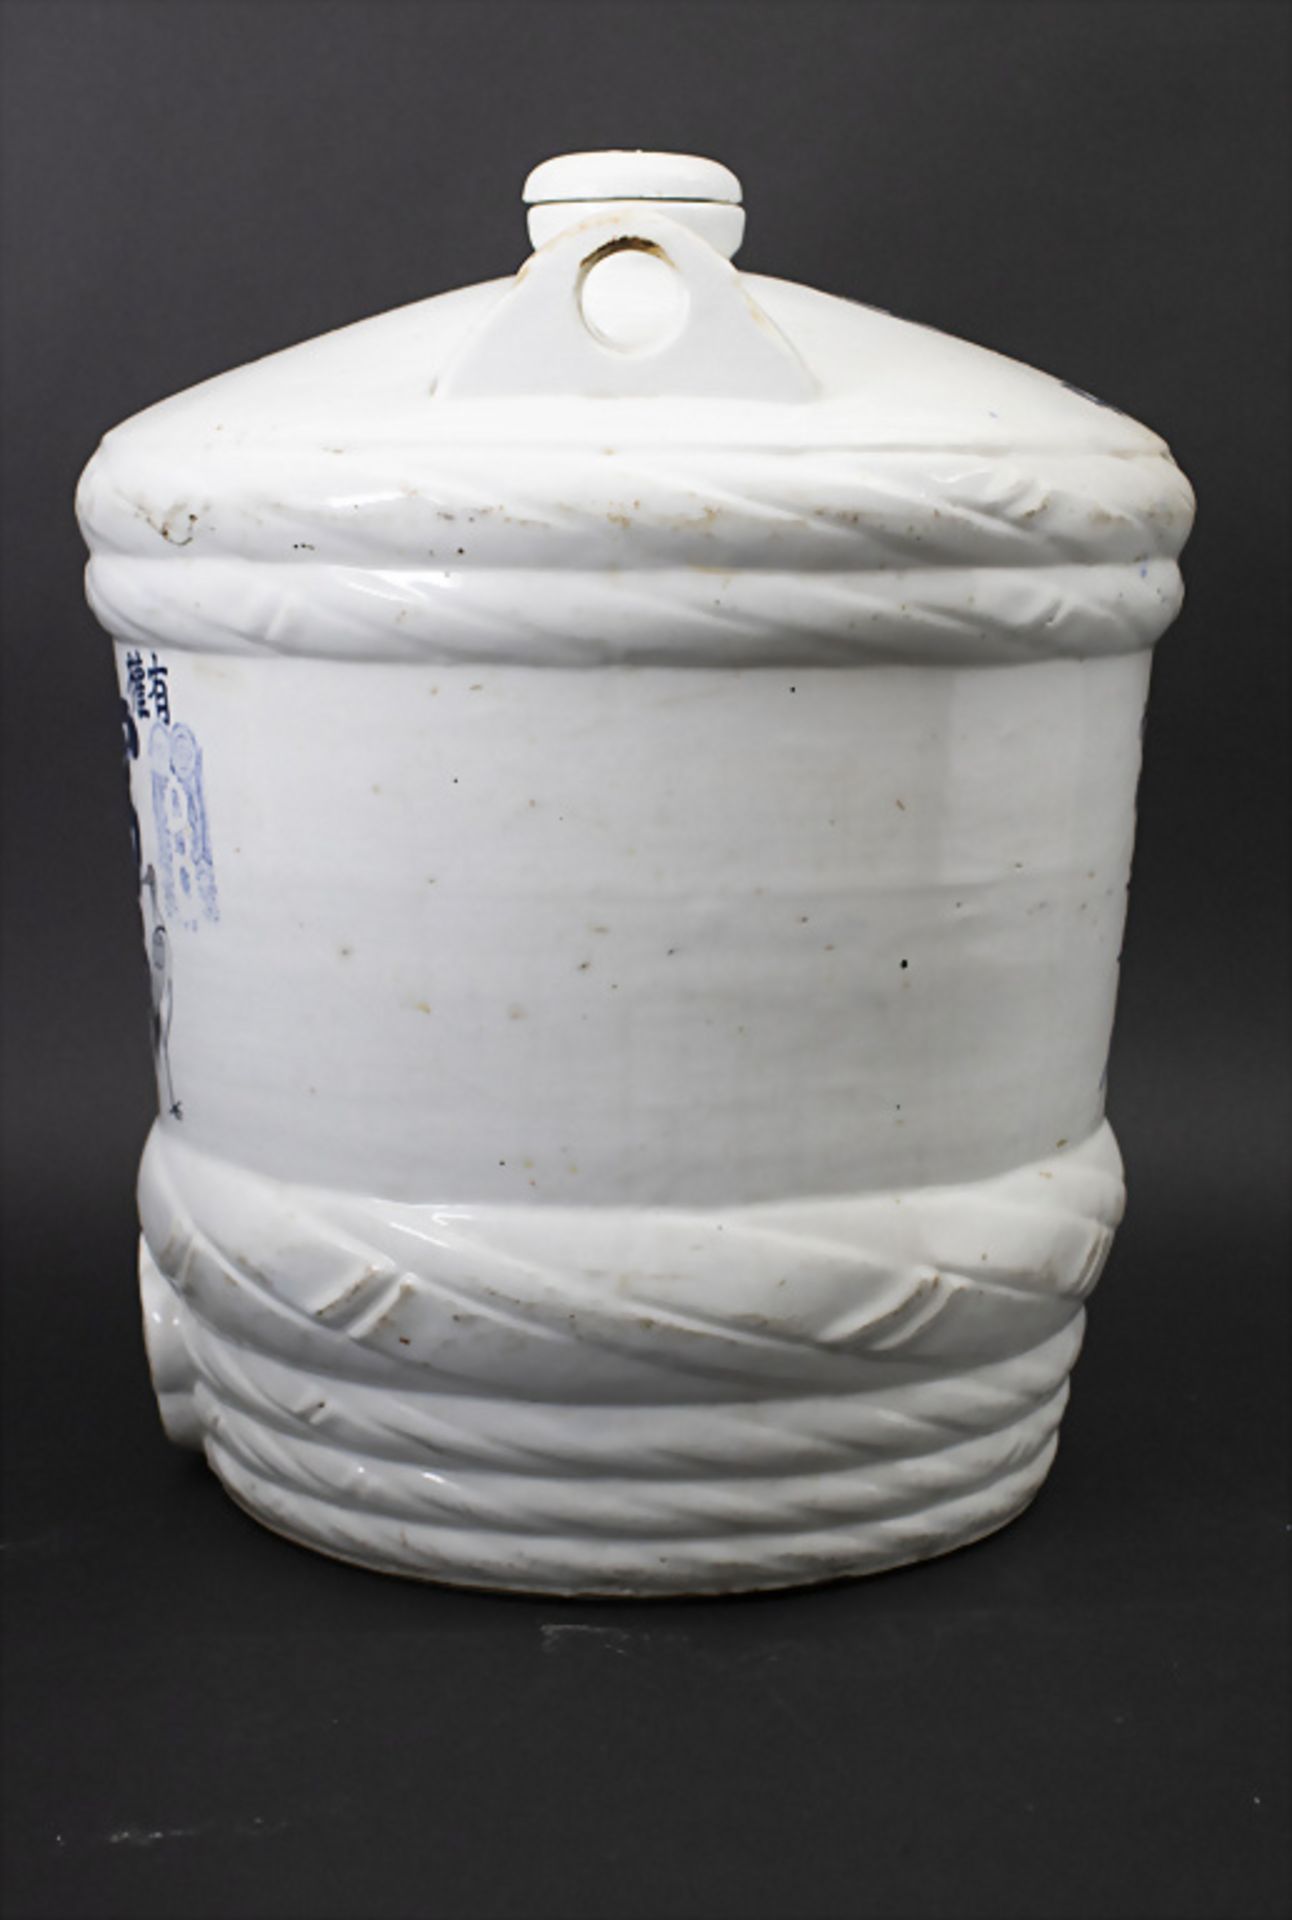 Sake-Behälter / Sake-Fass / A sake barrel, Japan, um 1900 - Image 2 of 5